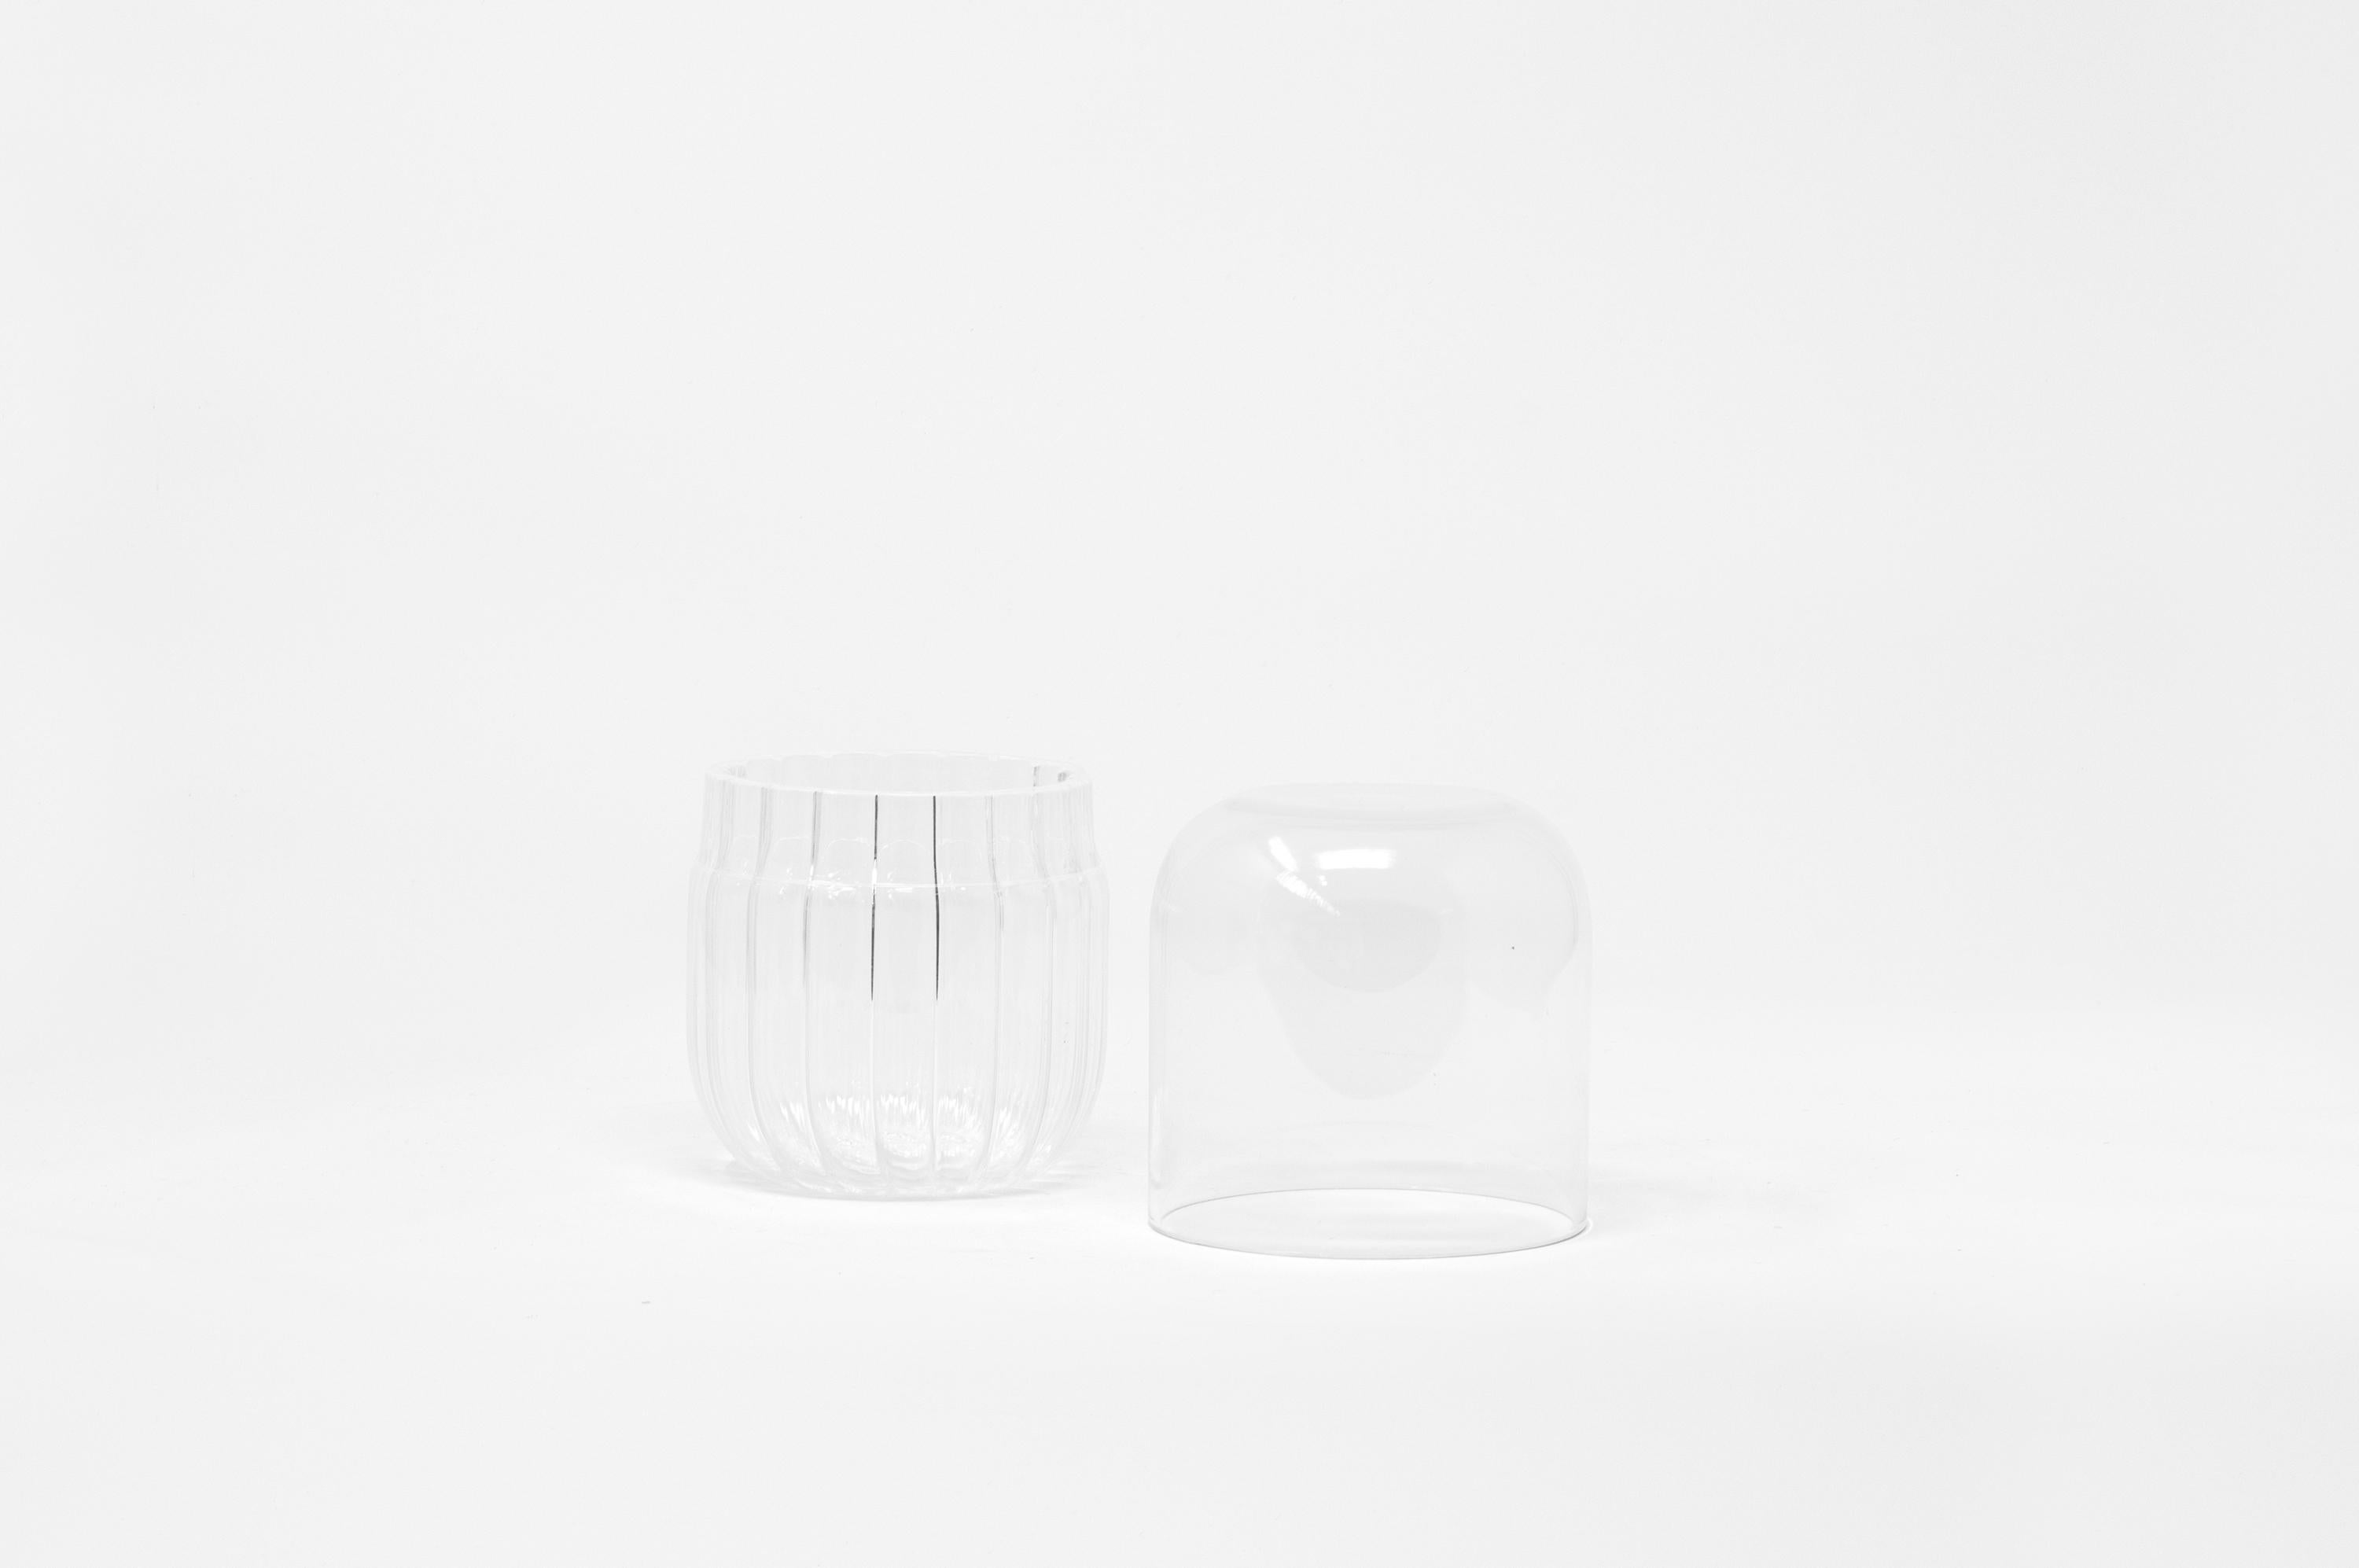 Innesti S est un récipient en verre borosilicate soufflé de main de maître à Venise par Soffieria pour Hands on Design. Conçue par GumDesign, cette pièce est caractérisée par le contraste entre le verre rayé du fond et la finition lisse du dessus ;